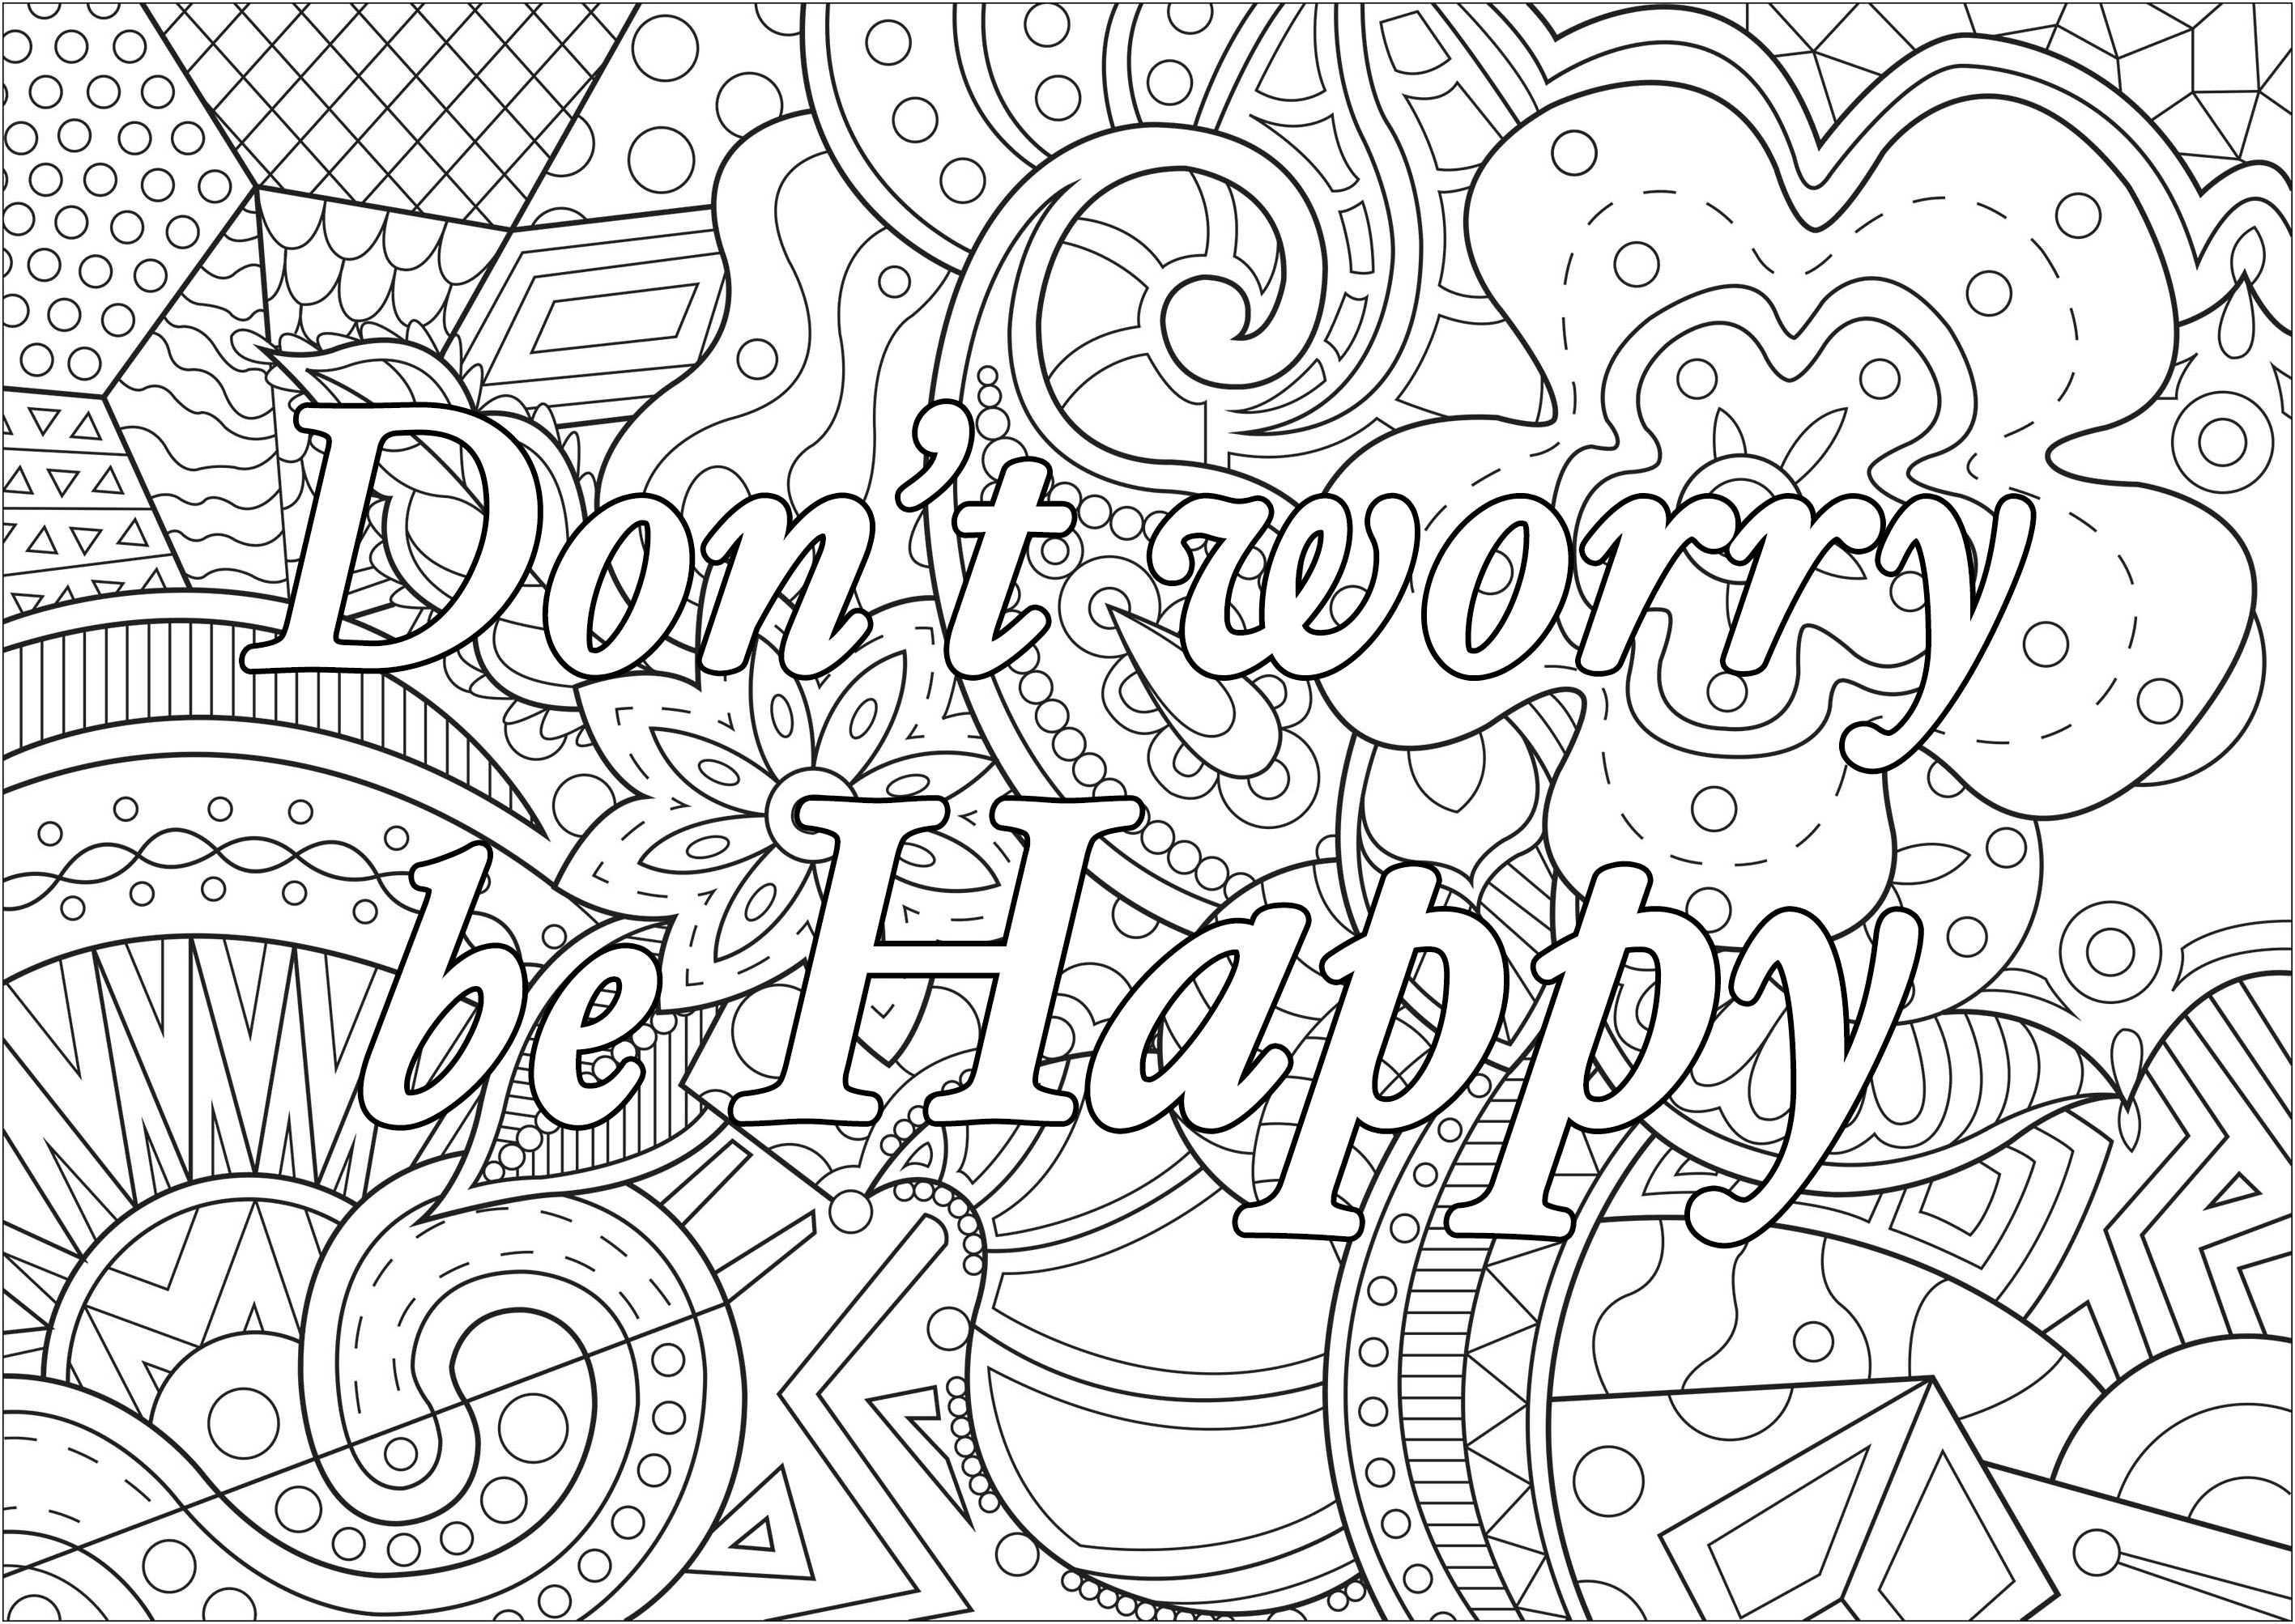 Mach dir keine Sorgen, sei glücklich